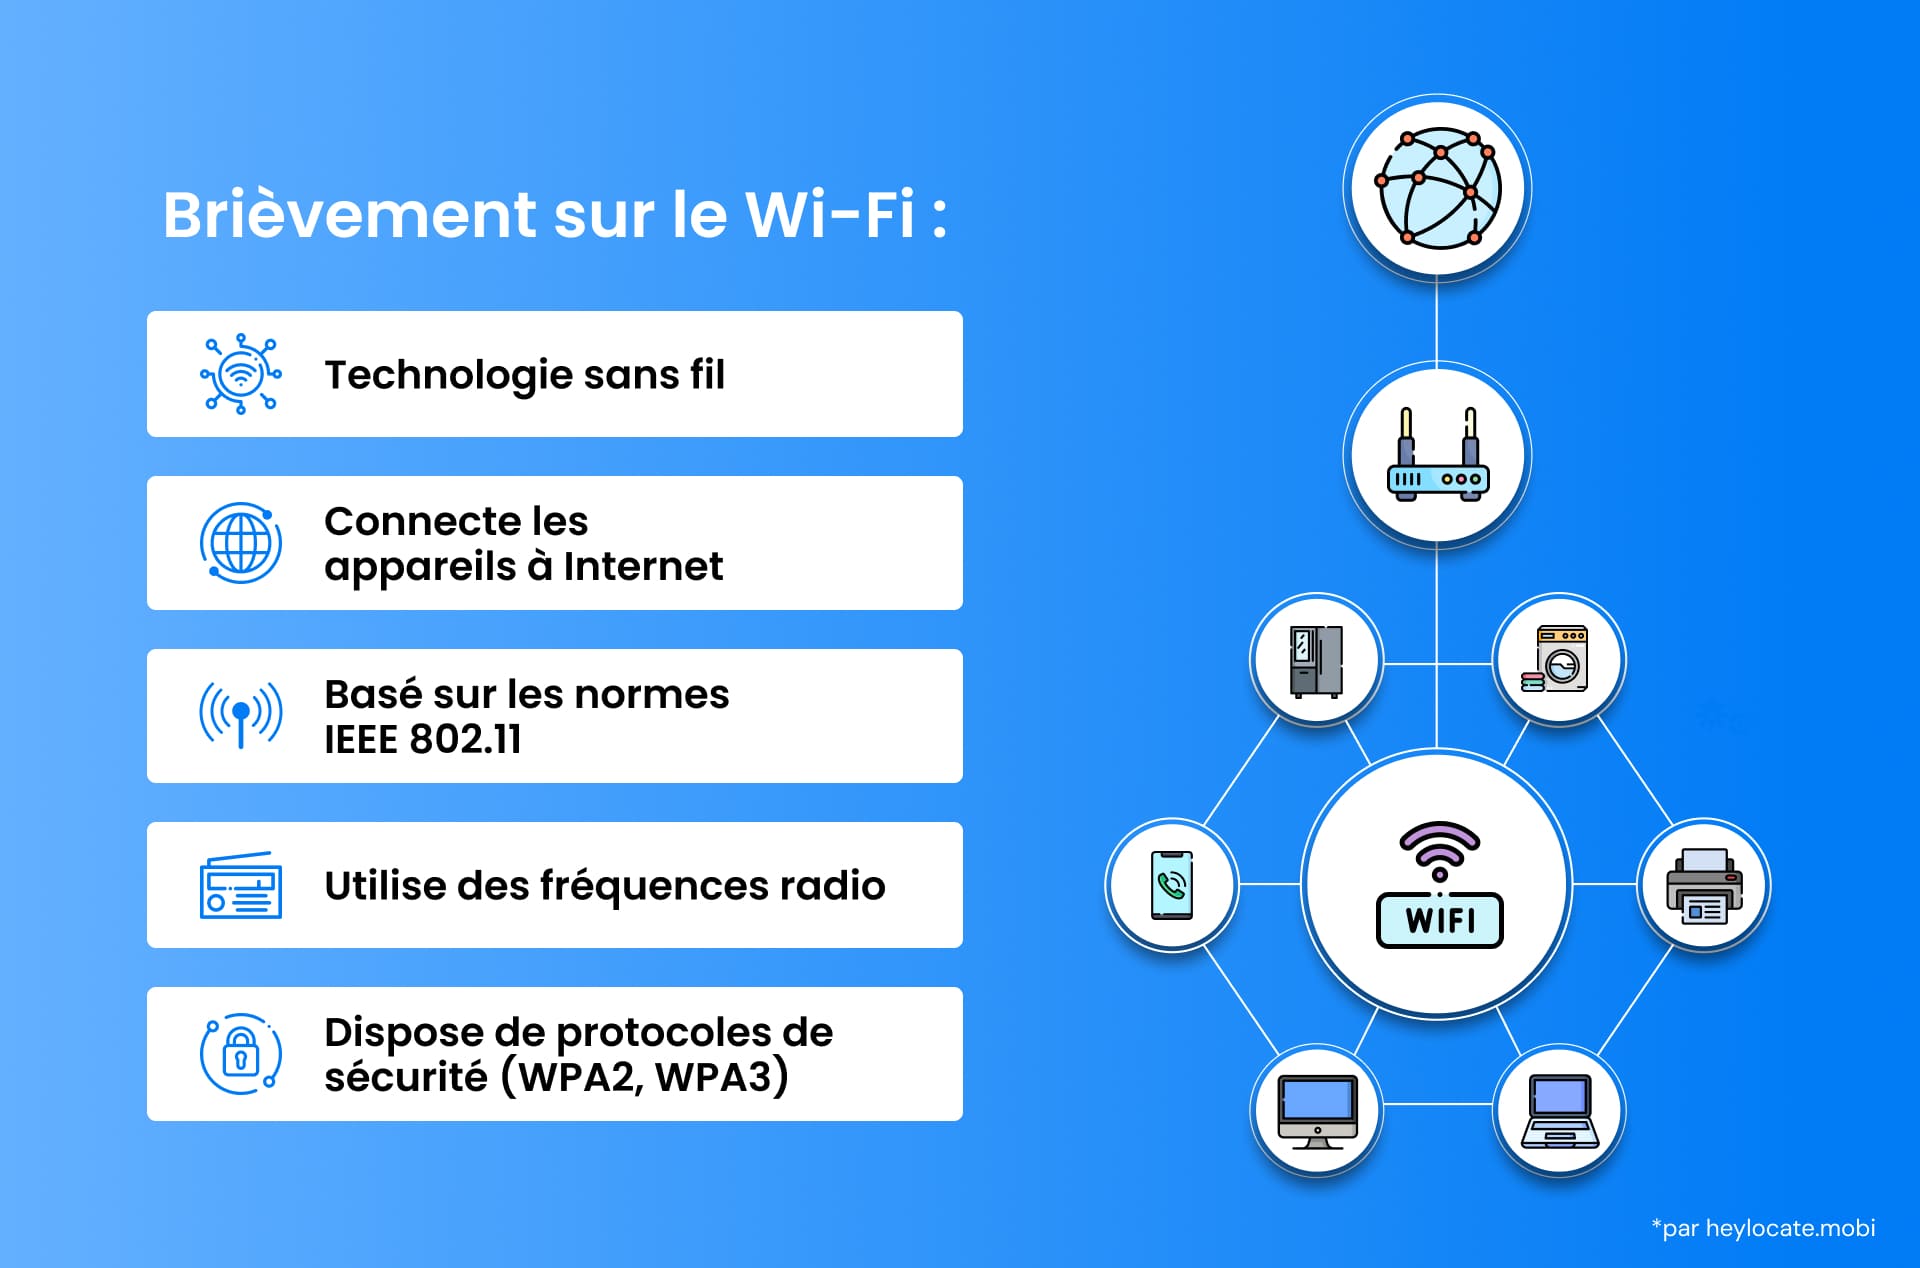 Une infographie expliquant la technologie Wi-Fi, y compris sa connexion aux appareils, les normes, l'utilisation des fréquences et les protocoles de sécurité.